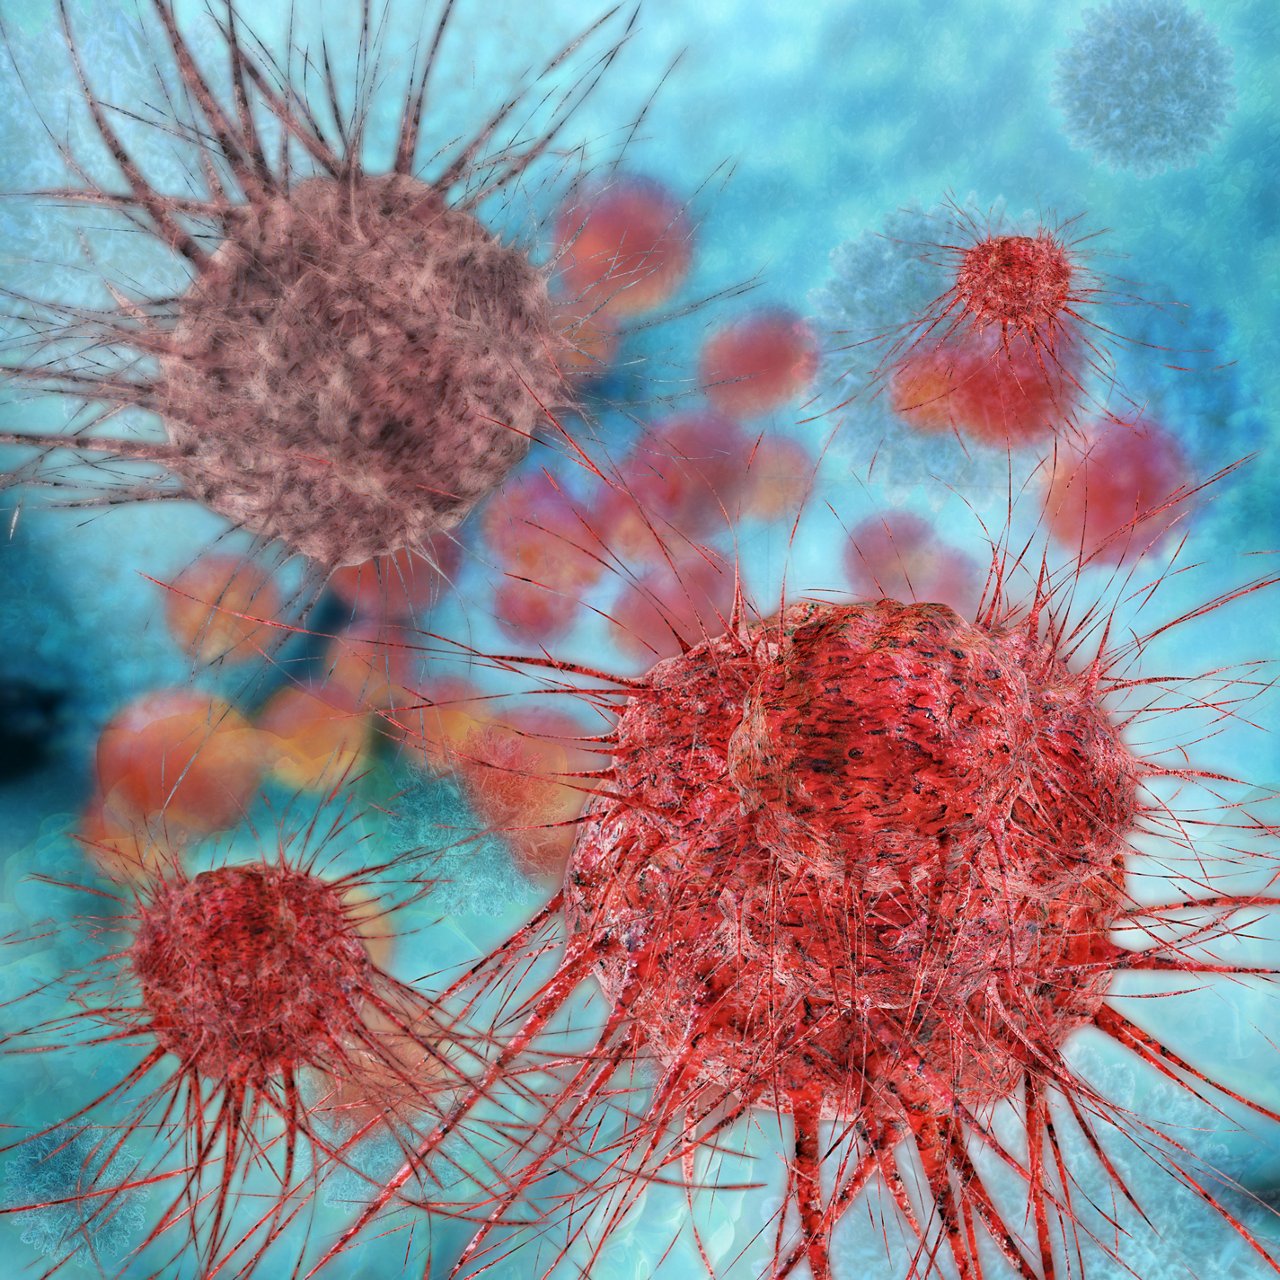 Darstellung mehrerer roter Zellen vor hellblauem Hintergrund